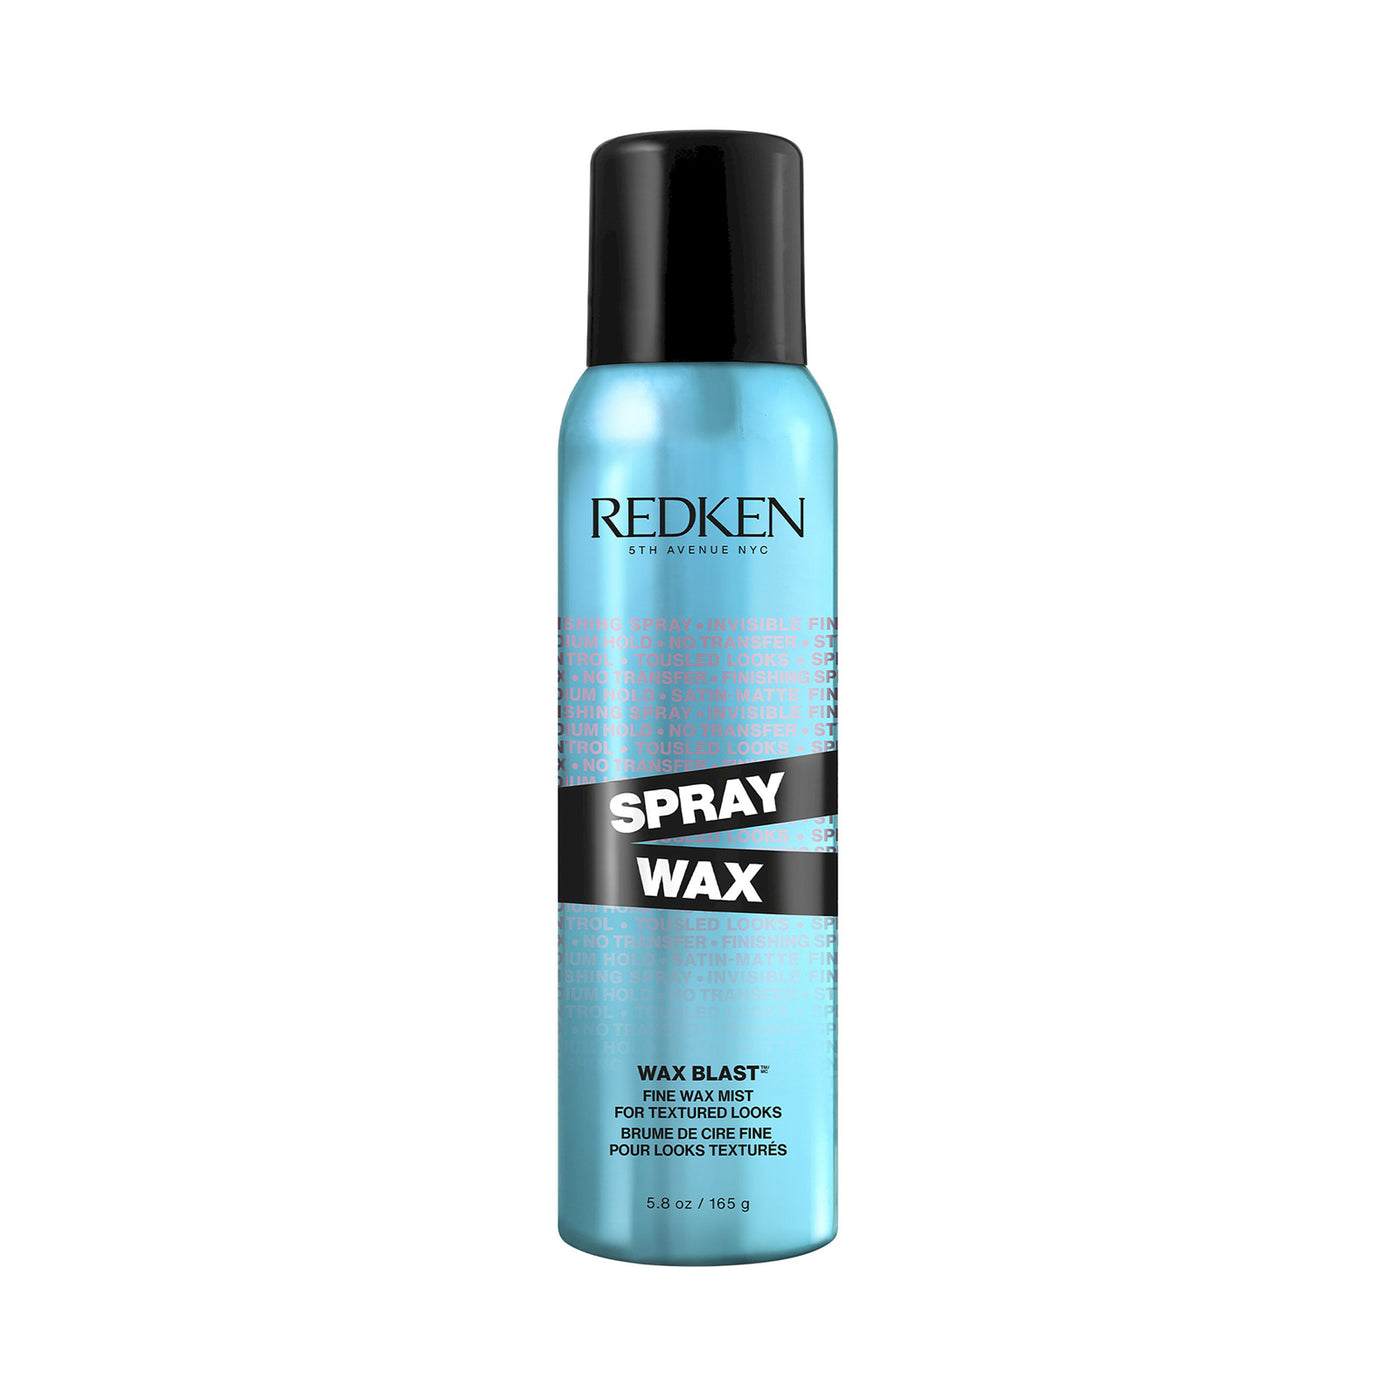 Redken Spray Wax (165g)